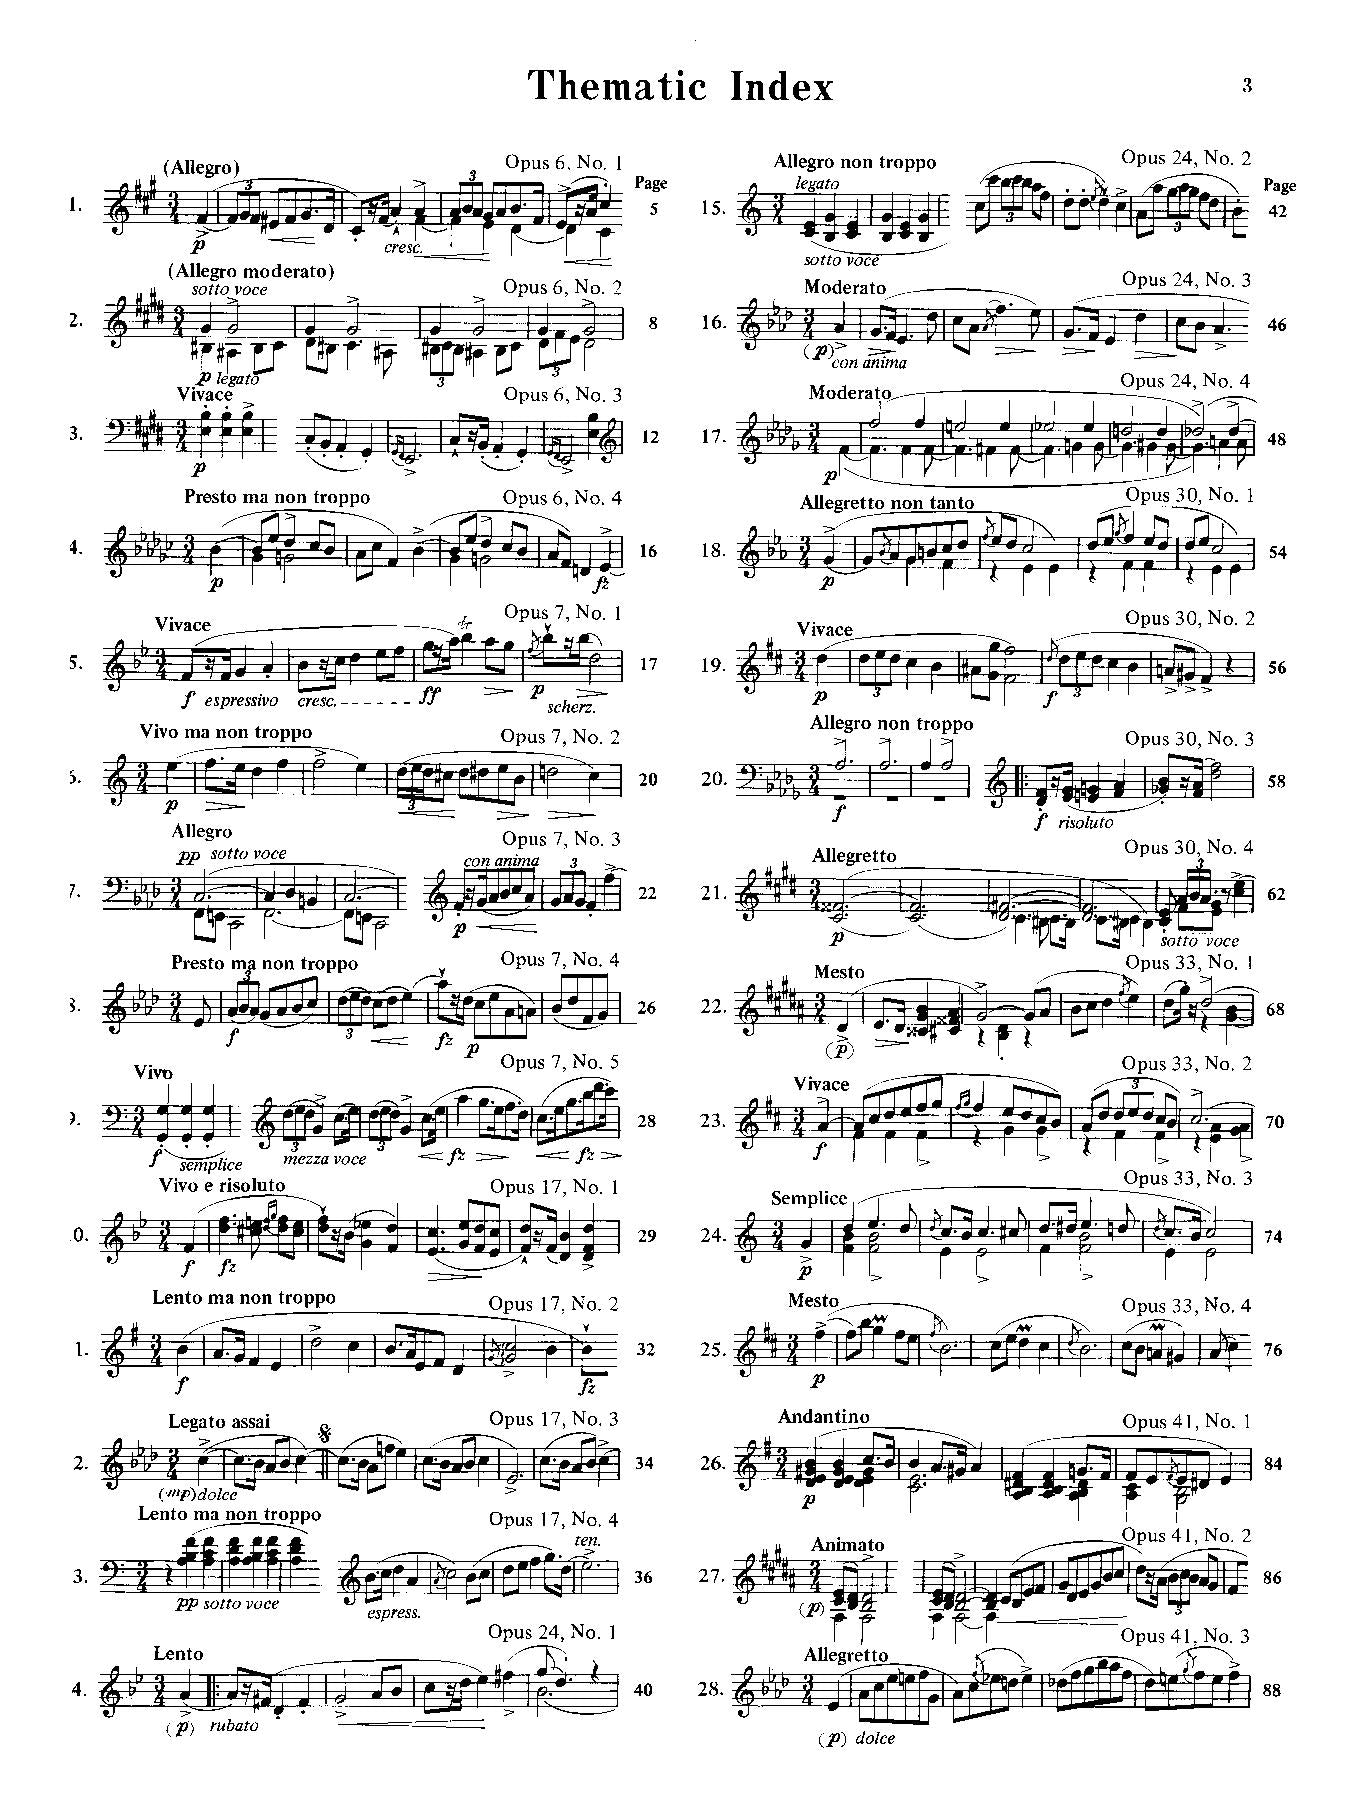 Chopin: Mazurkas (Complete)